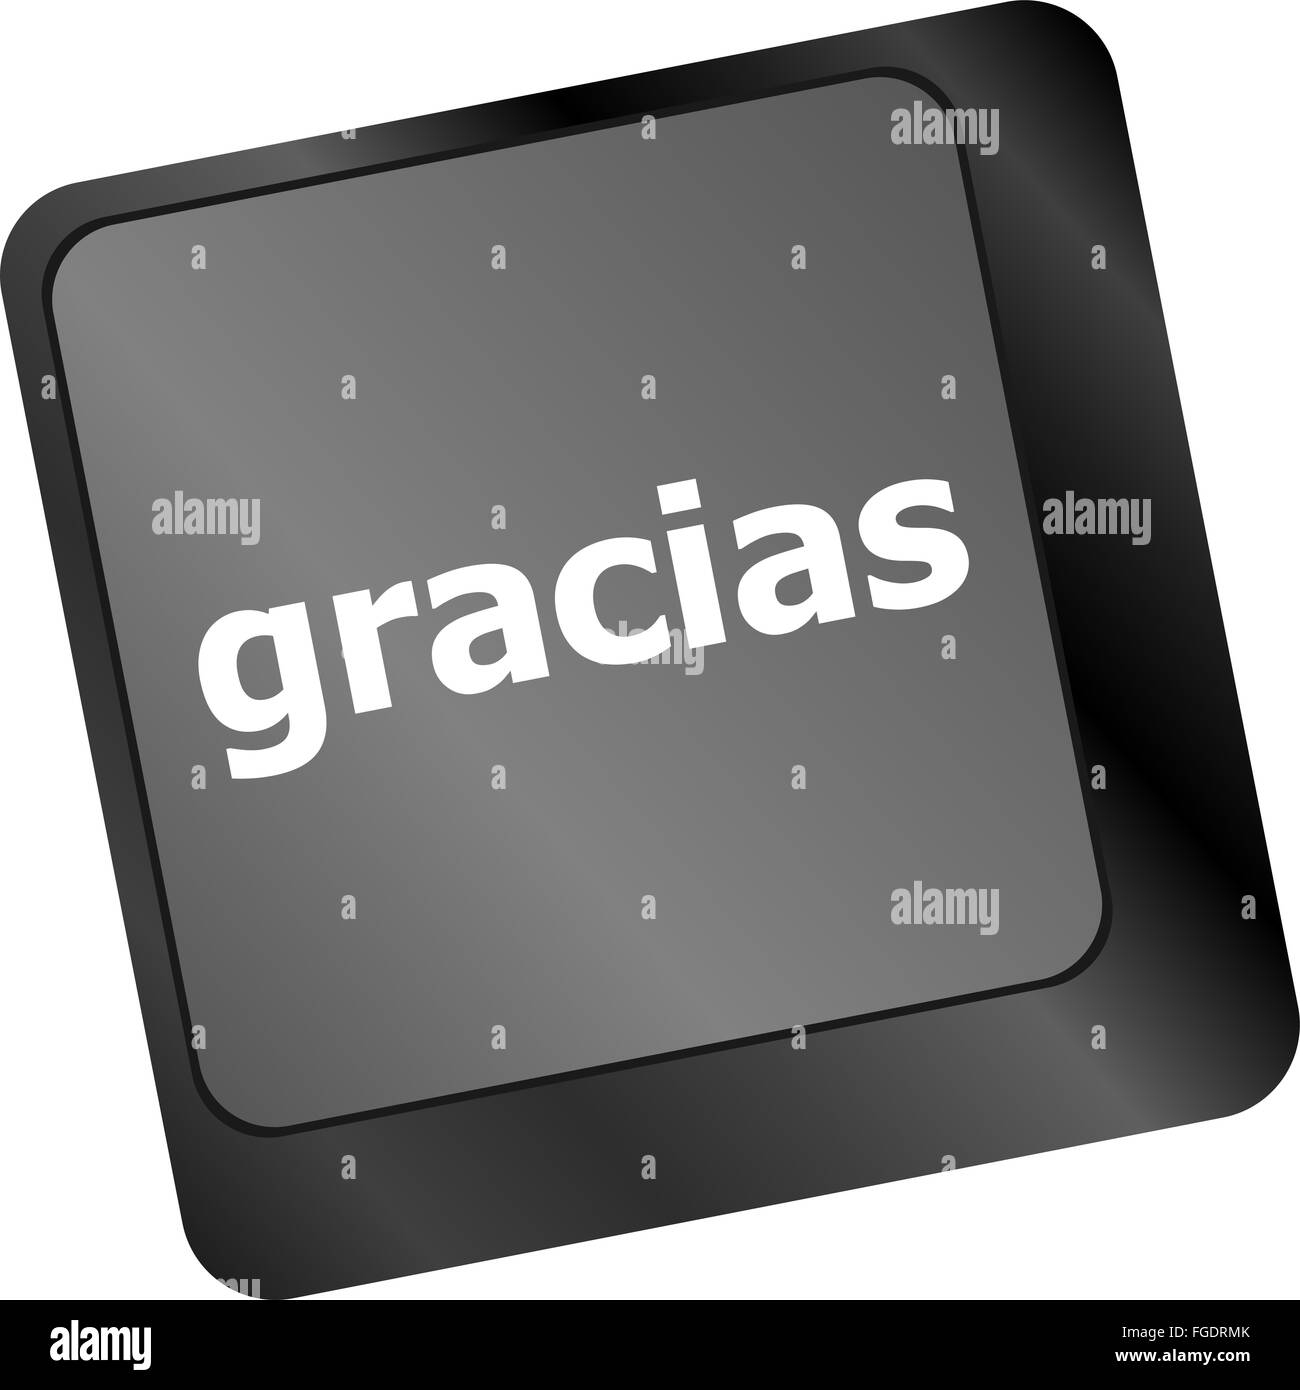 Computer i tasti della tastiera con la parola Gracias, spagnolo grazie Foto Stock